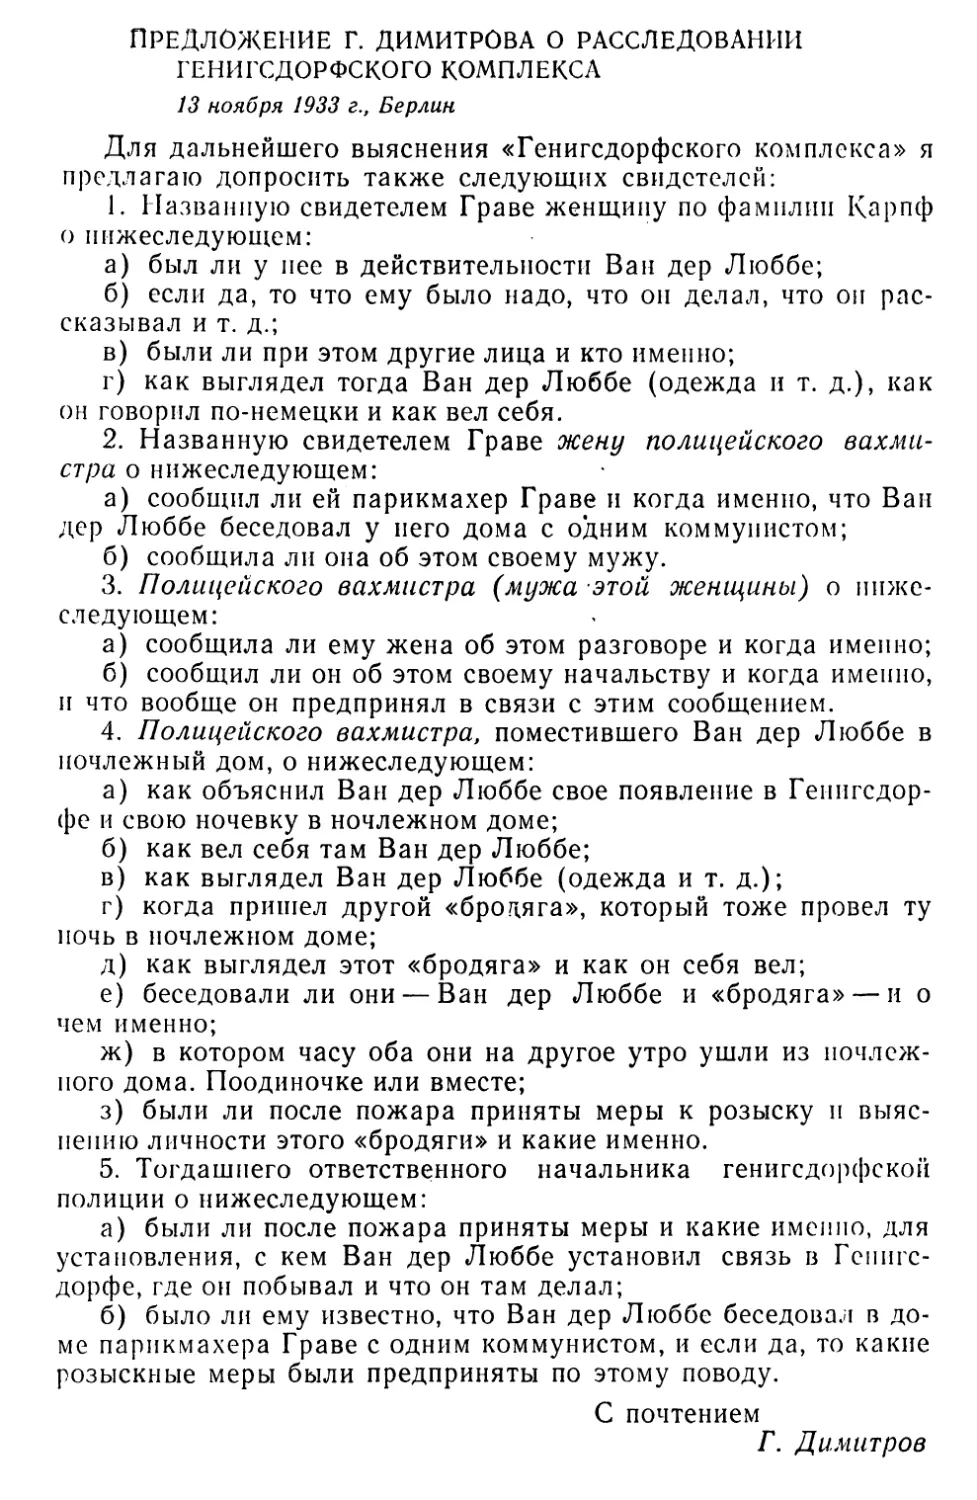 Предложение Г. Димитрова о расследовании Генигсдорфского комплекса. 13 ноября 1933 г